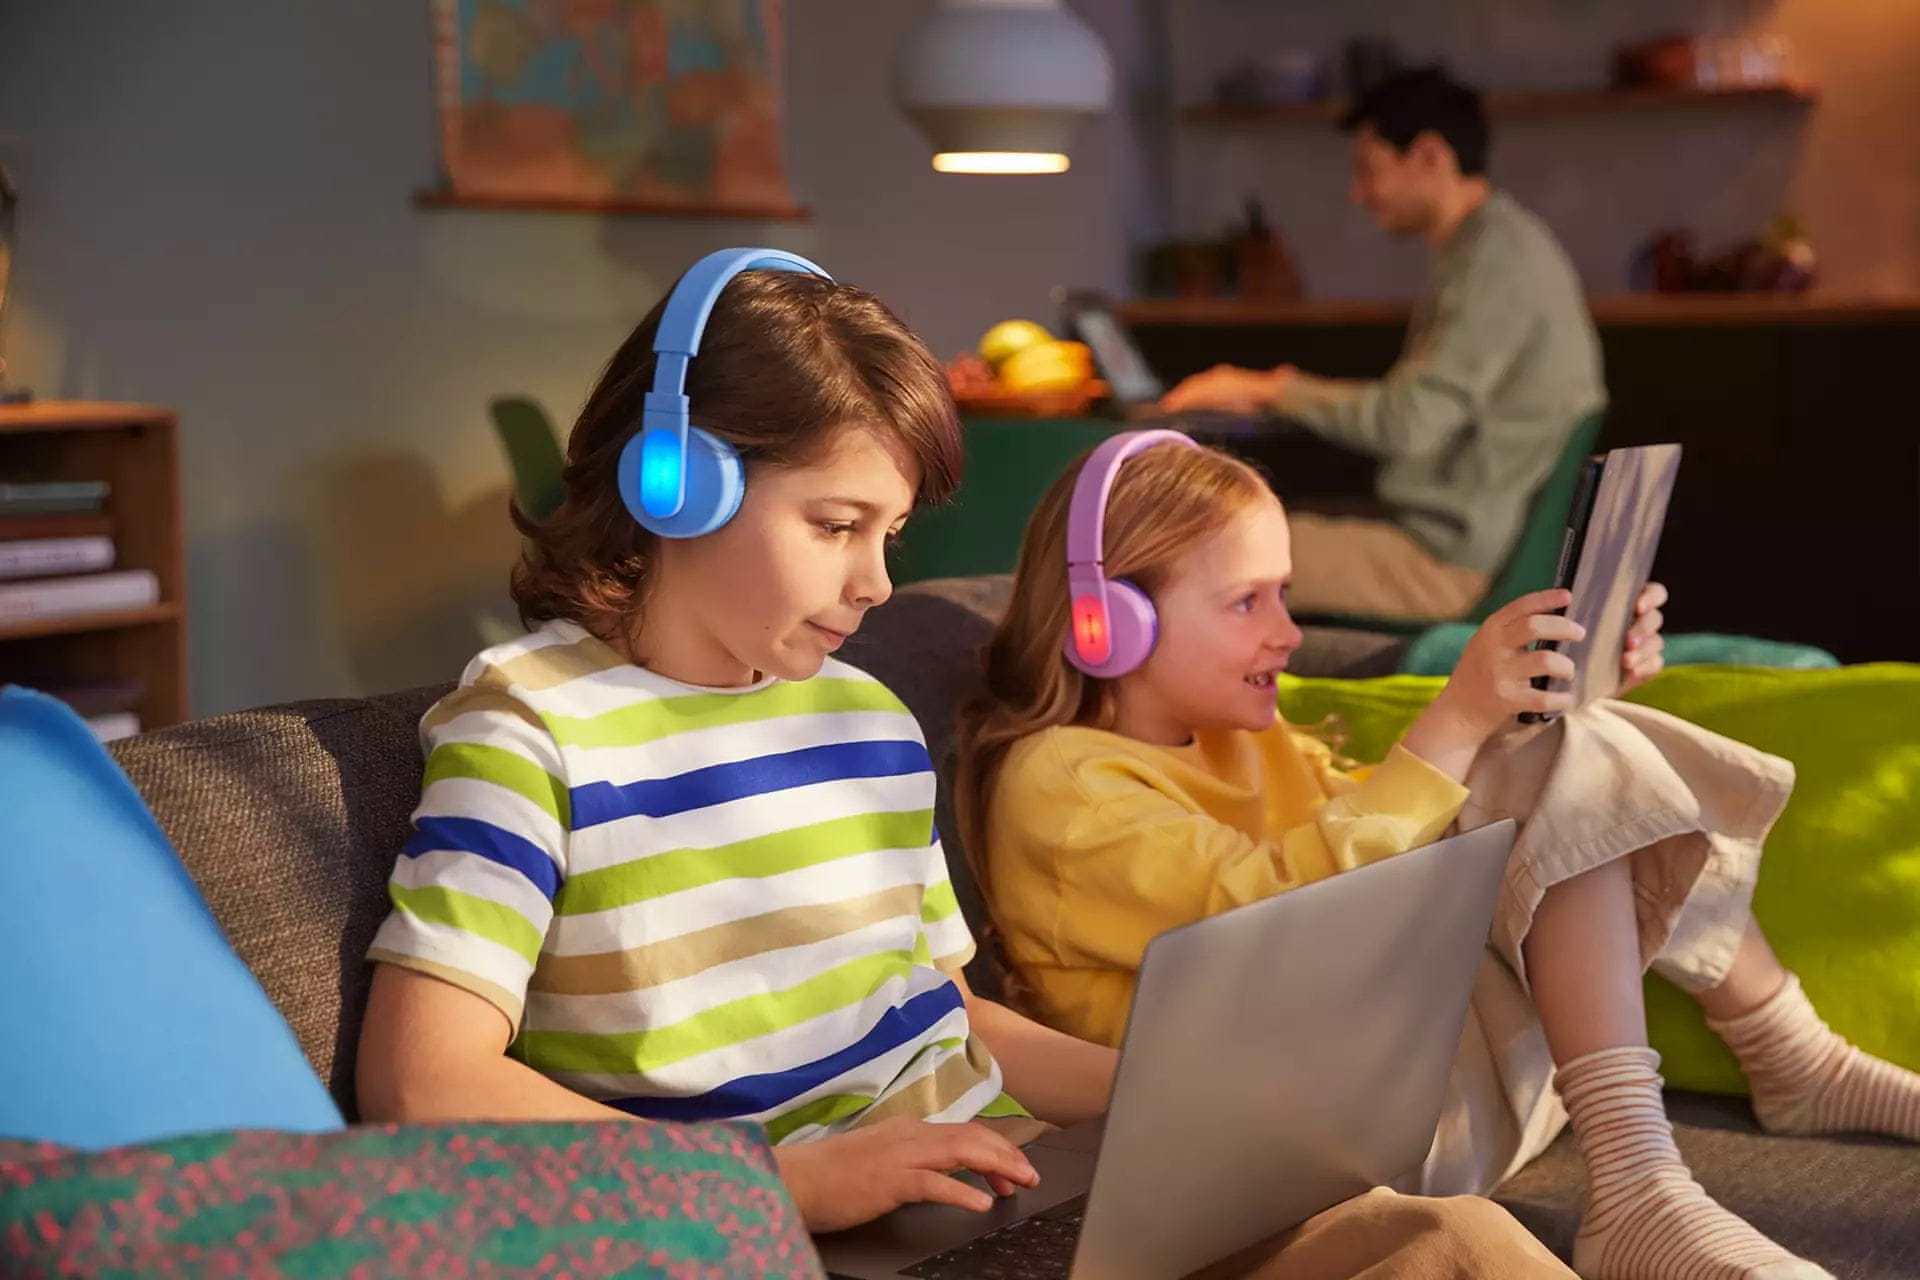  moderne bluetooth slušalice philips tak4206 dječje ograničene glasnoće, mogu se povezati kabelom, izvrstan zvuk dug životni vijek ugodan mikrofon za upravljanje pozivima 